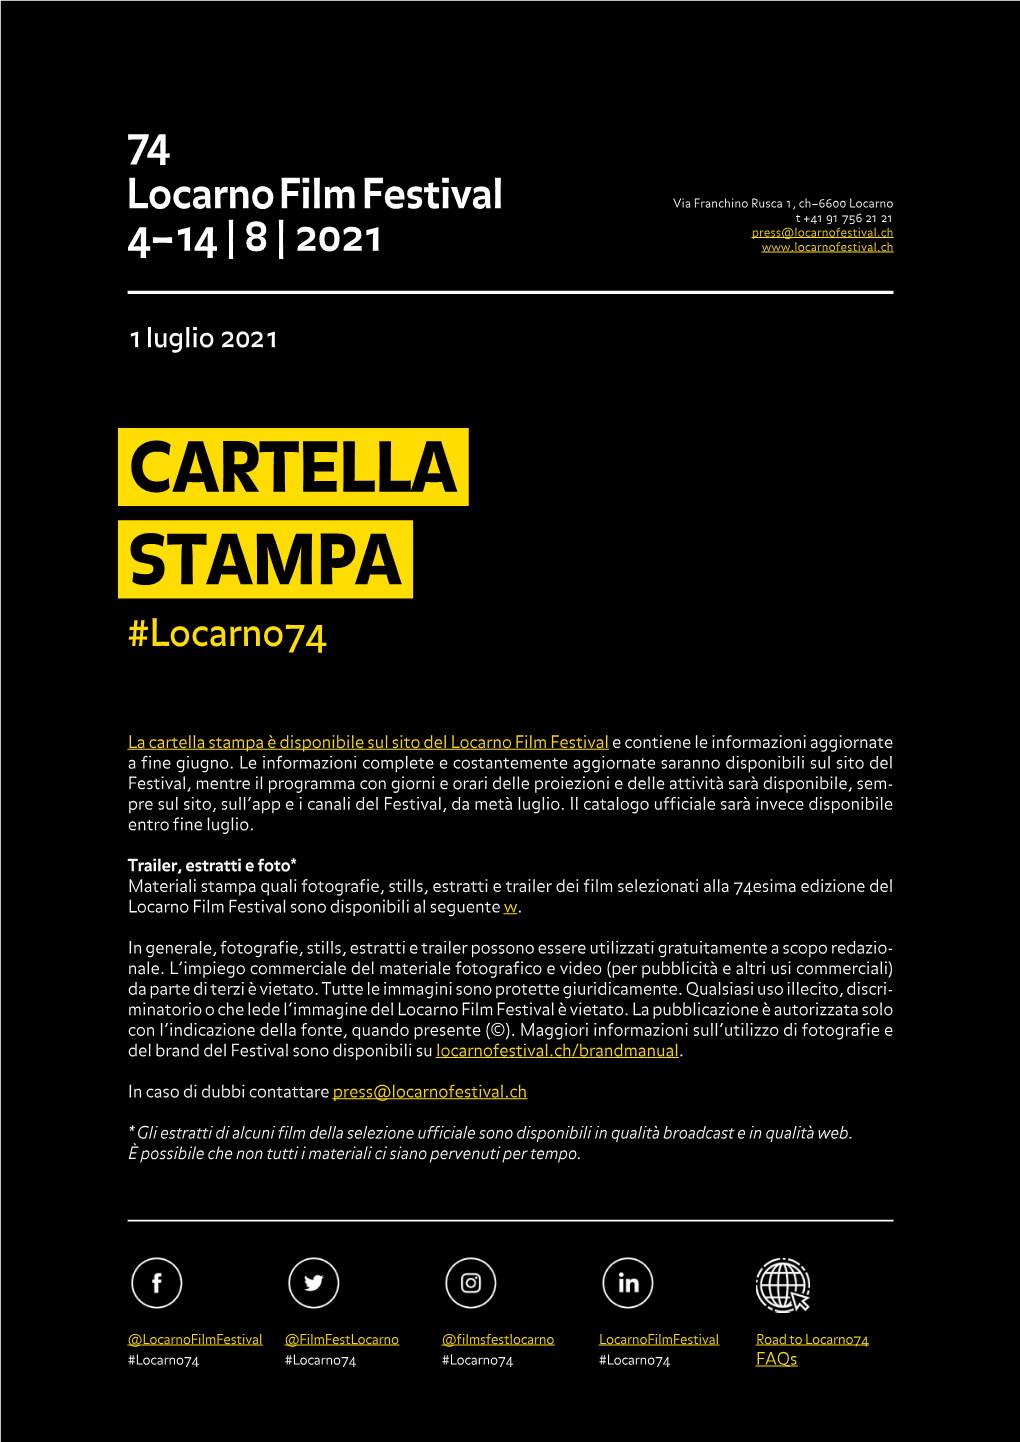 CARTELLA STAMPA #Locarno74